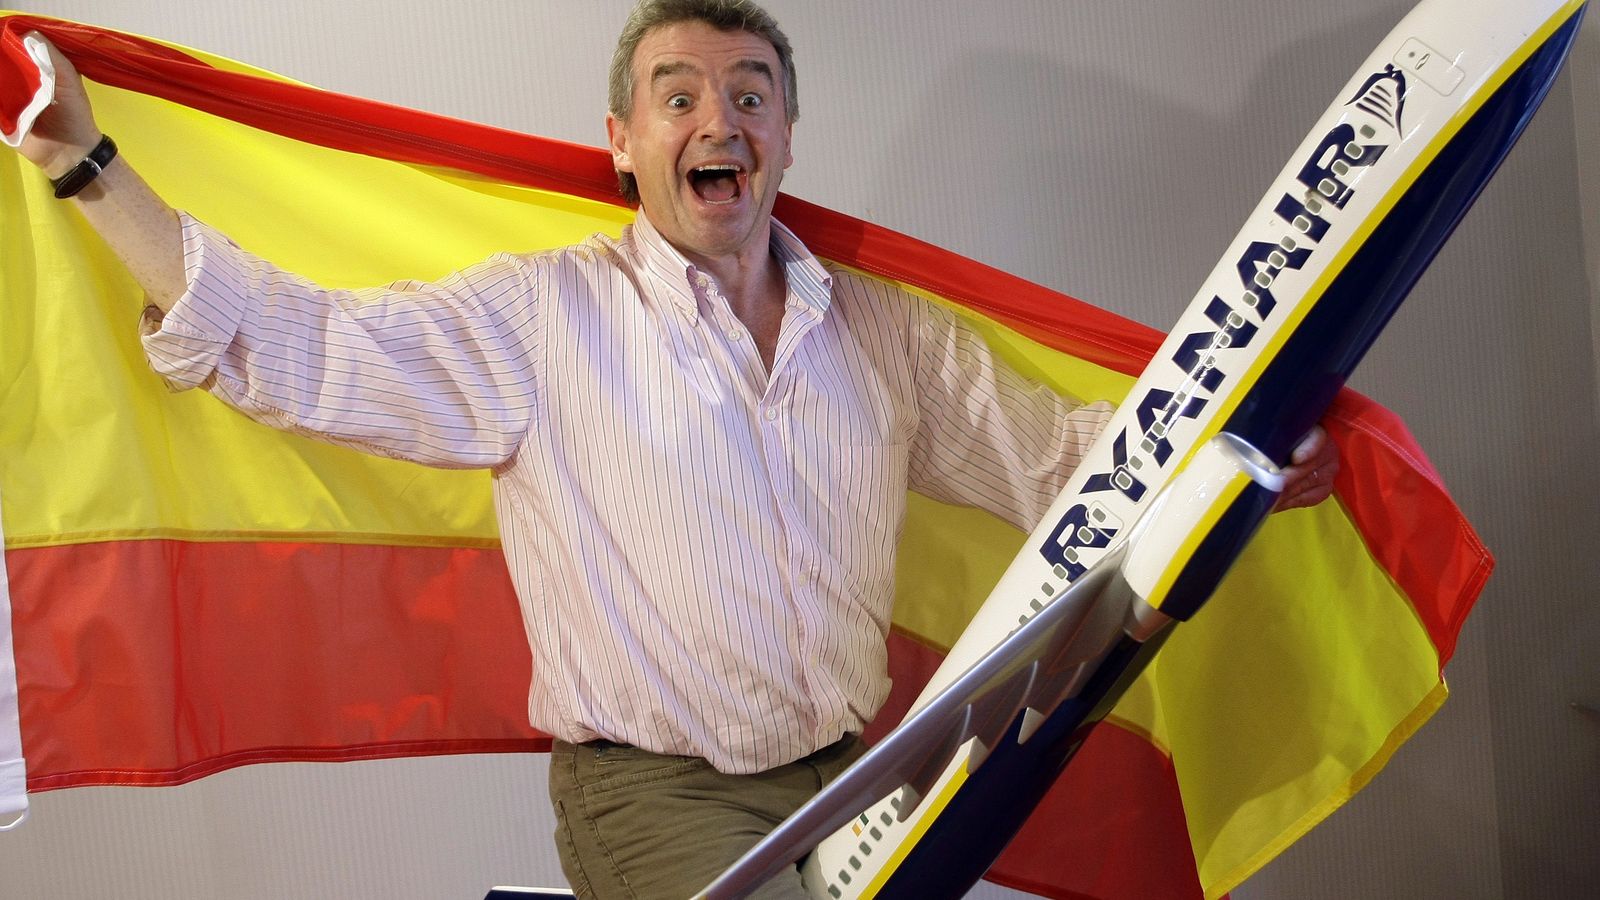 Foto:  El presidente de Ryanair, Michael O'Leary, envuelto en la bandera española (Reuters)